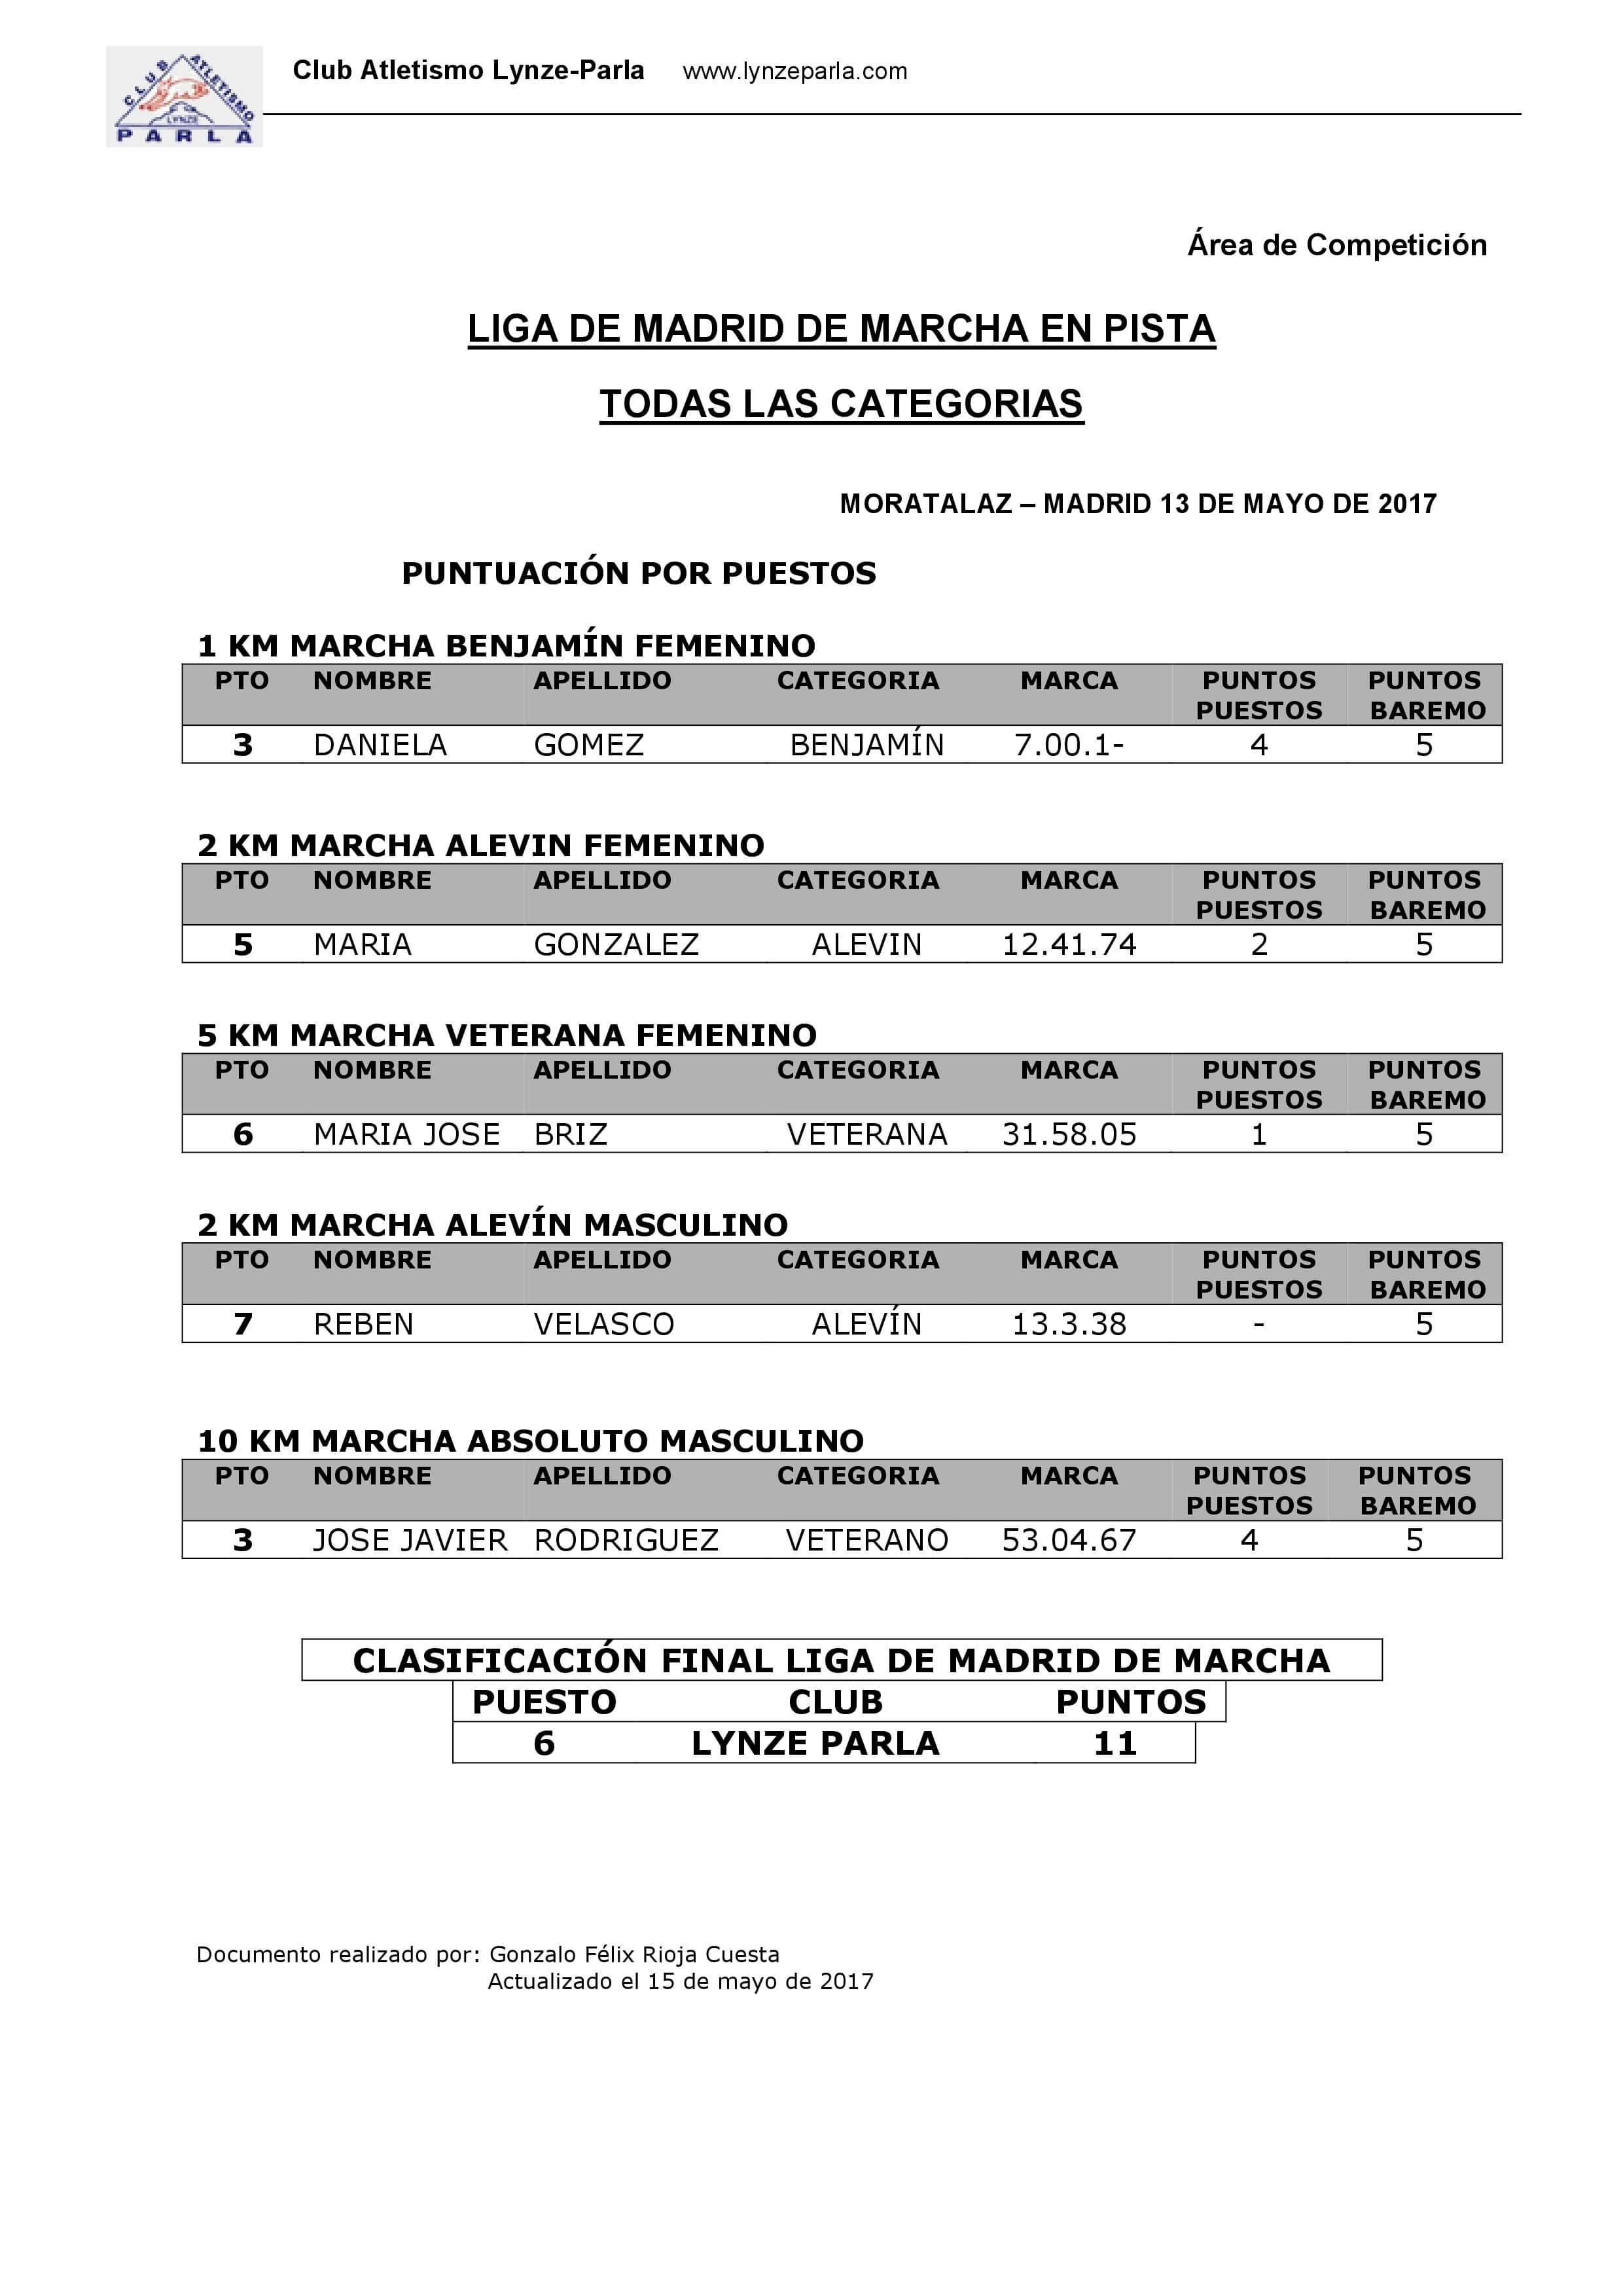 LIGA MADRID CLUBES DE MARCHA EN PISTA 2.017.pdf page 1 2